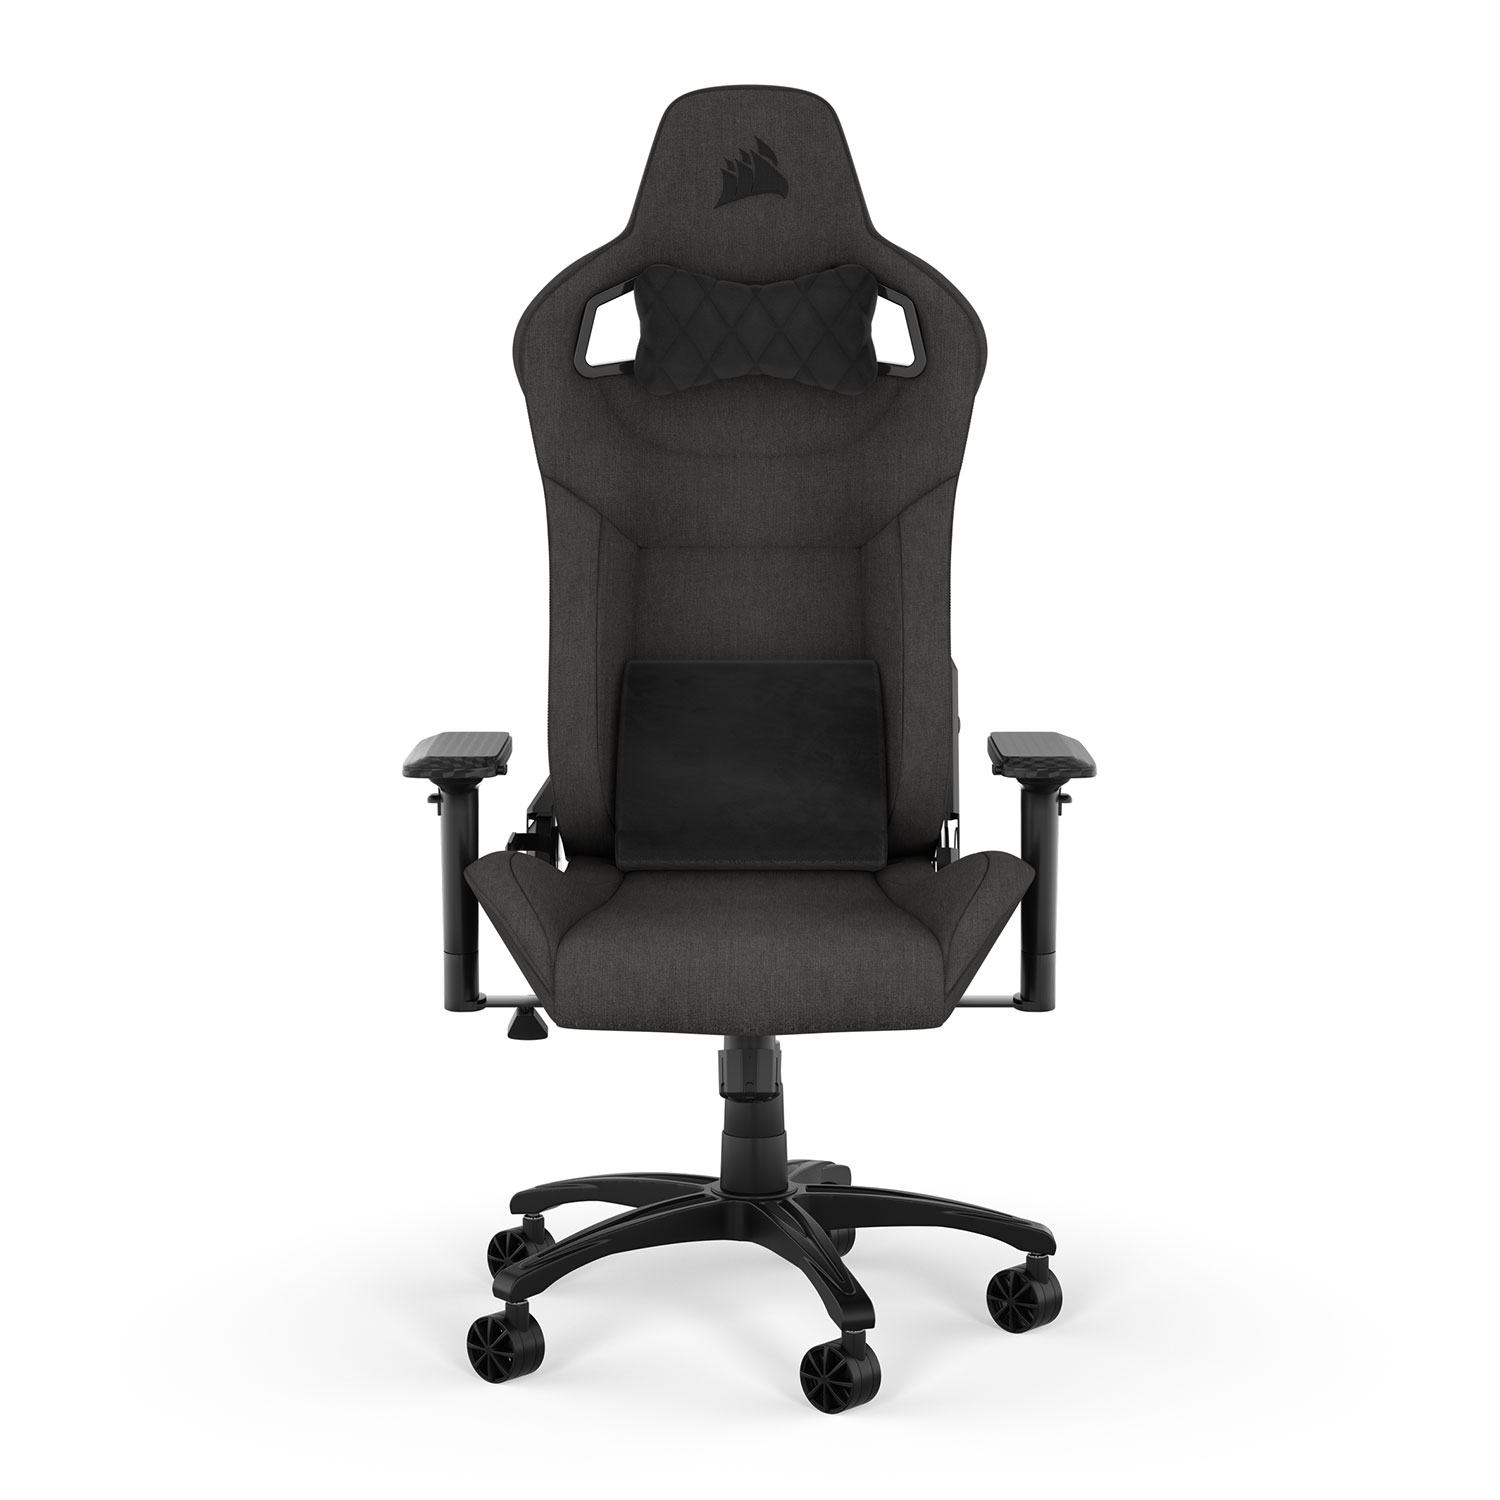 Corsair T3 RUSH, la nueva silla gamer para jugar cómodo y con